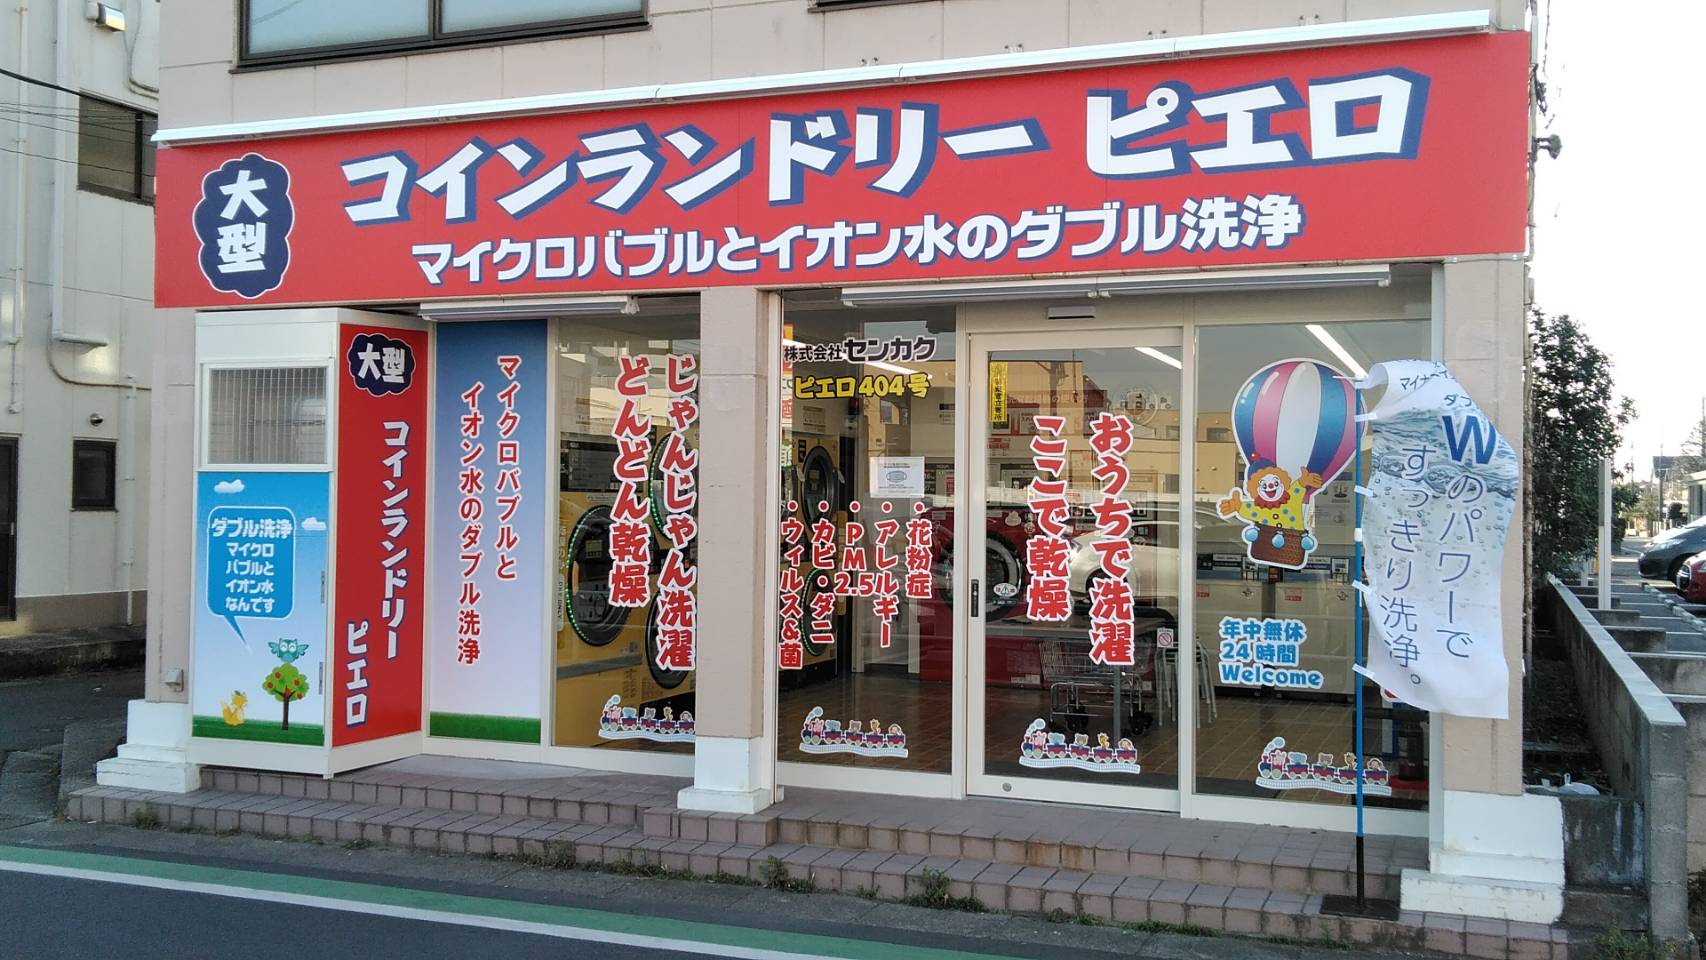 コインランドリーピエロ 404号 東岩槻店の写真